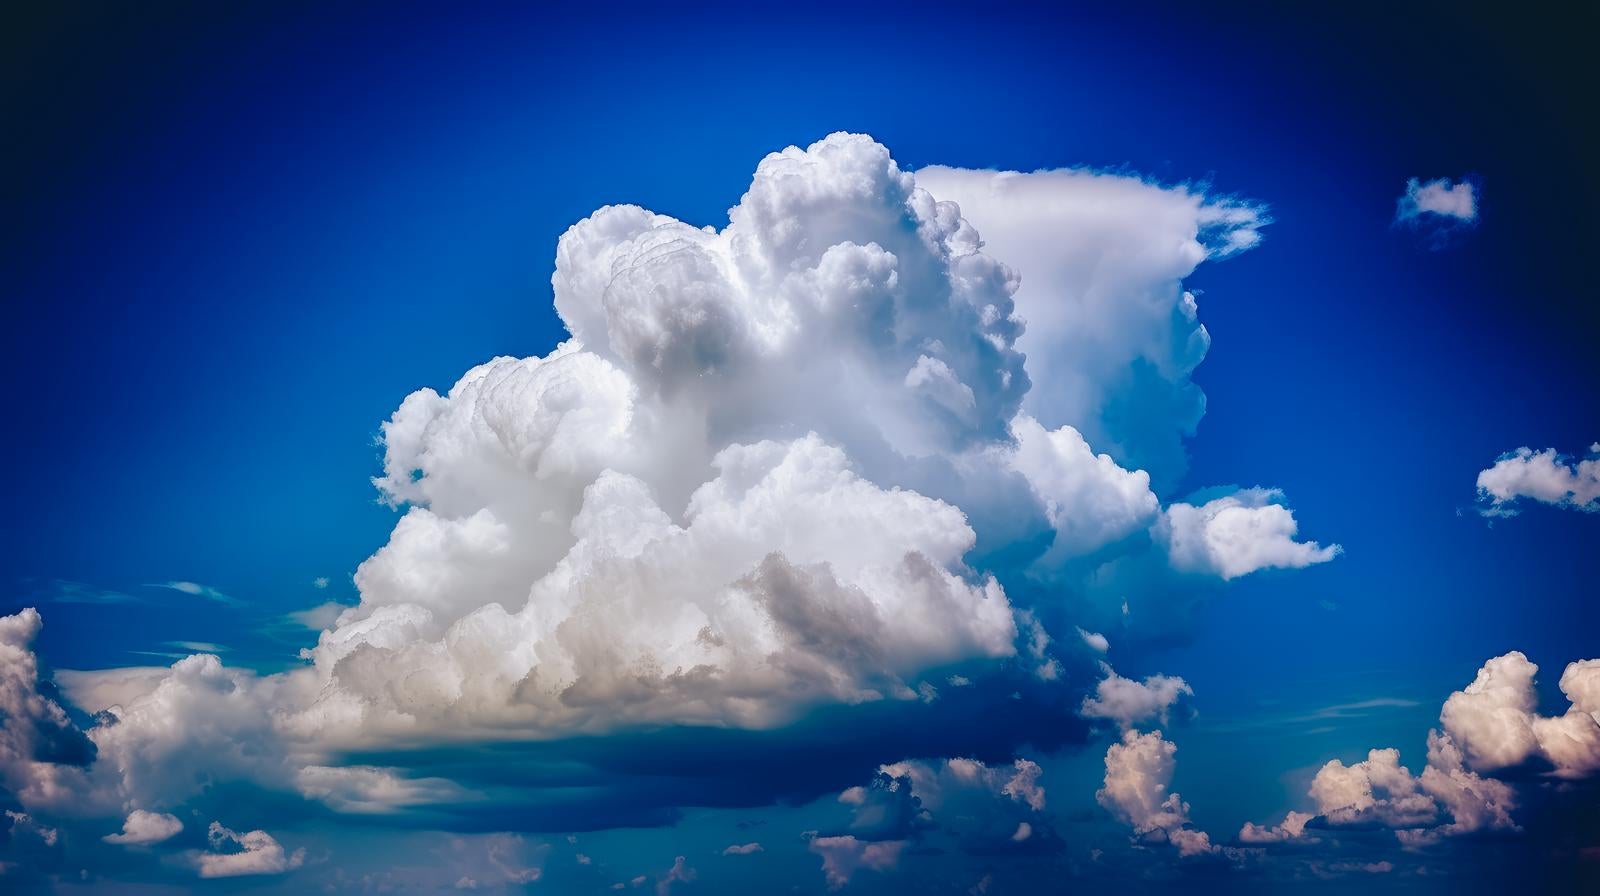 「大きな積乱雲が浮かぶ」の写真